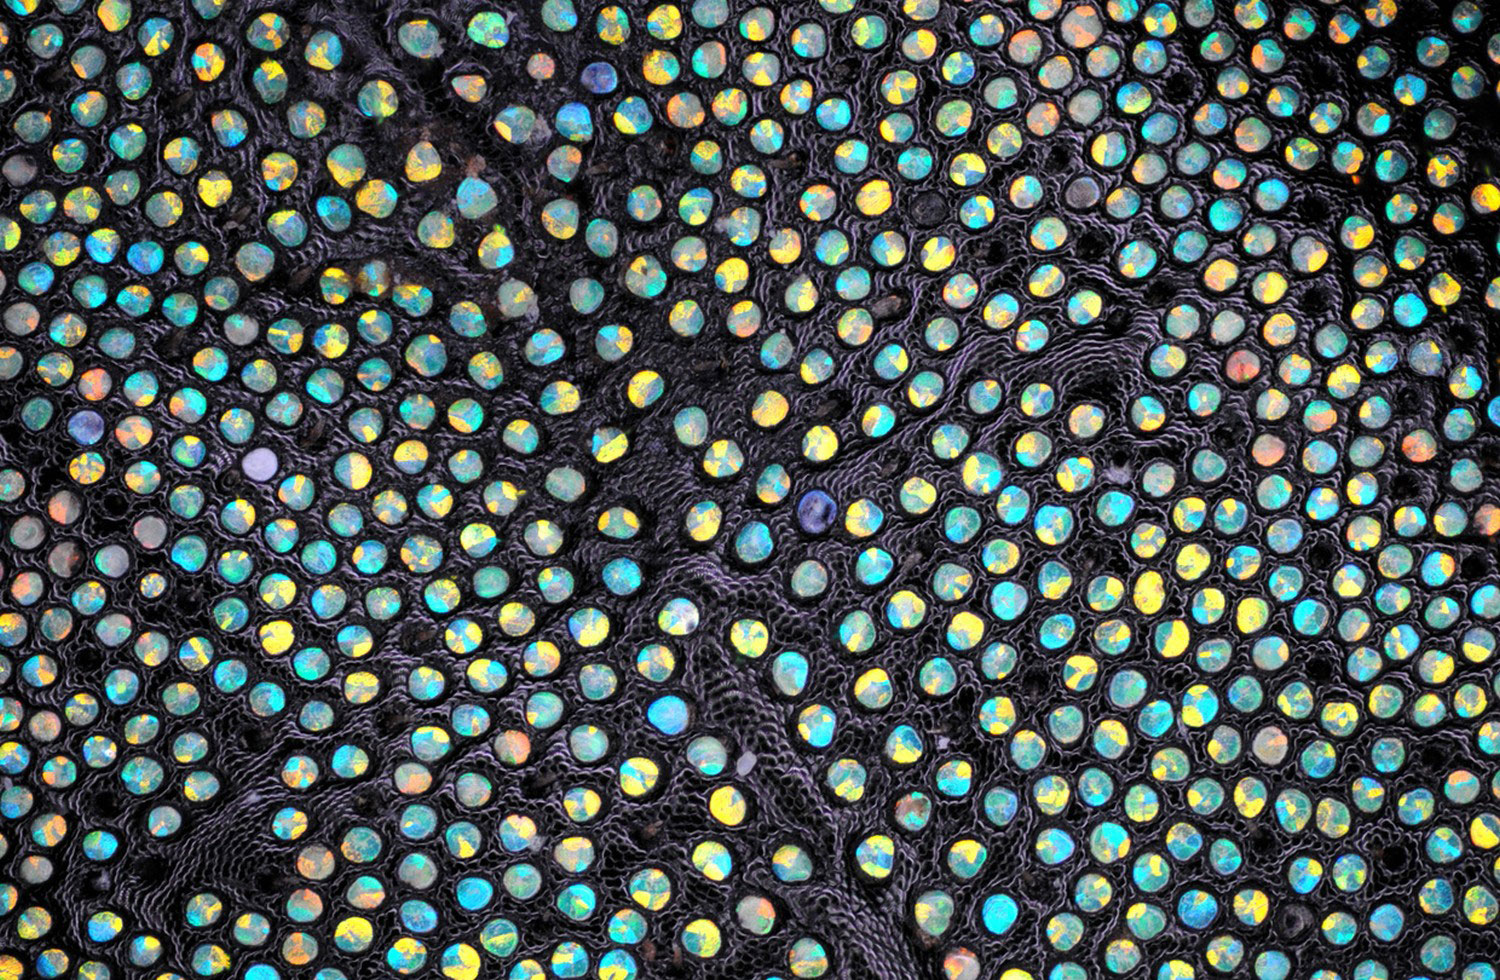 чешуя долгоносика, фото под микроскопом